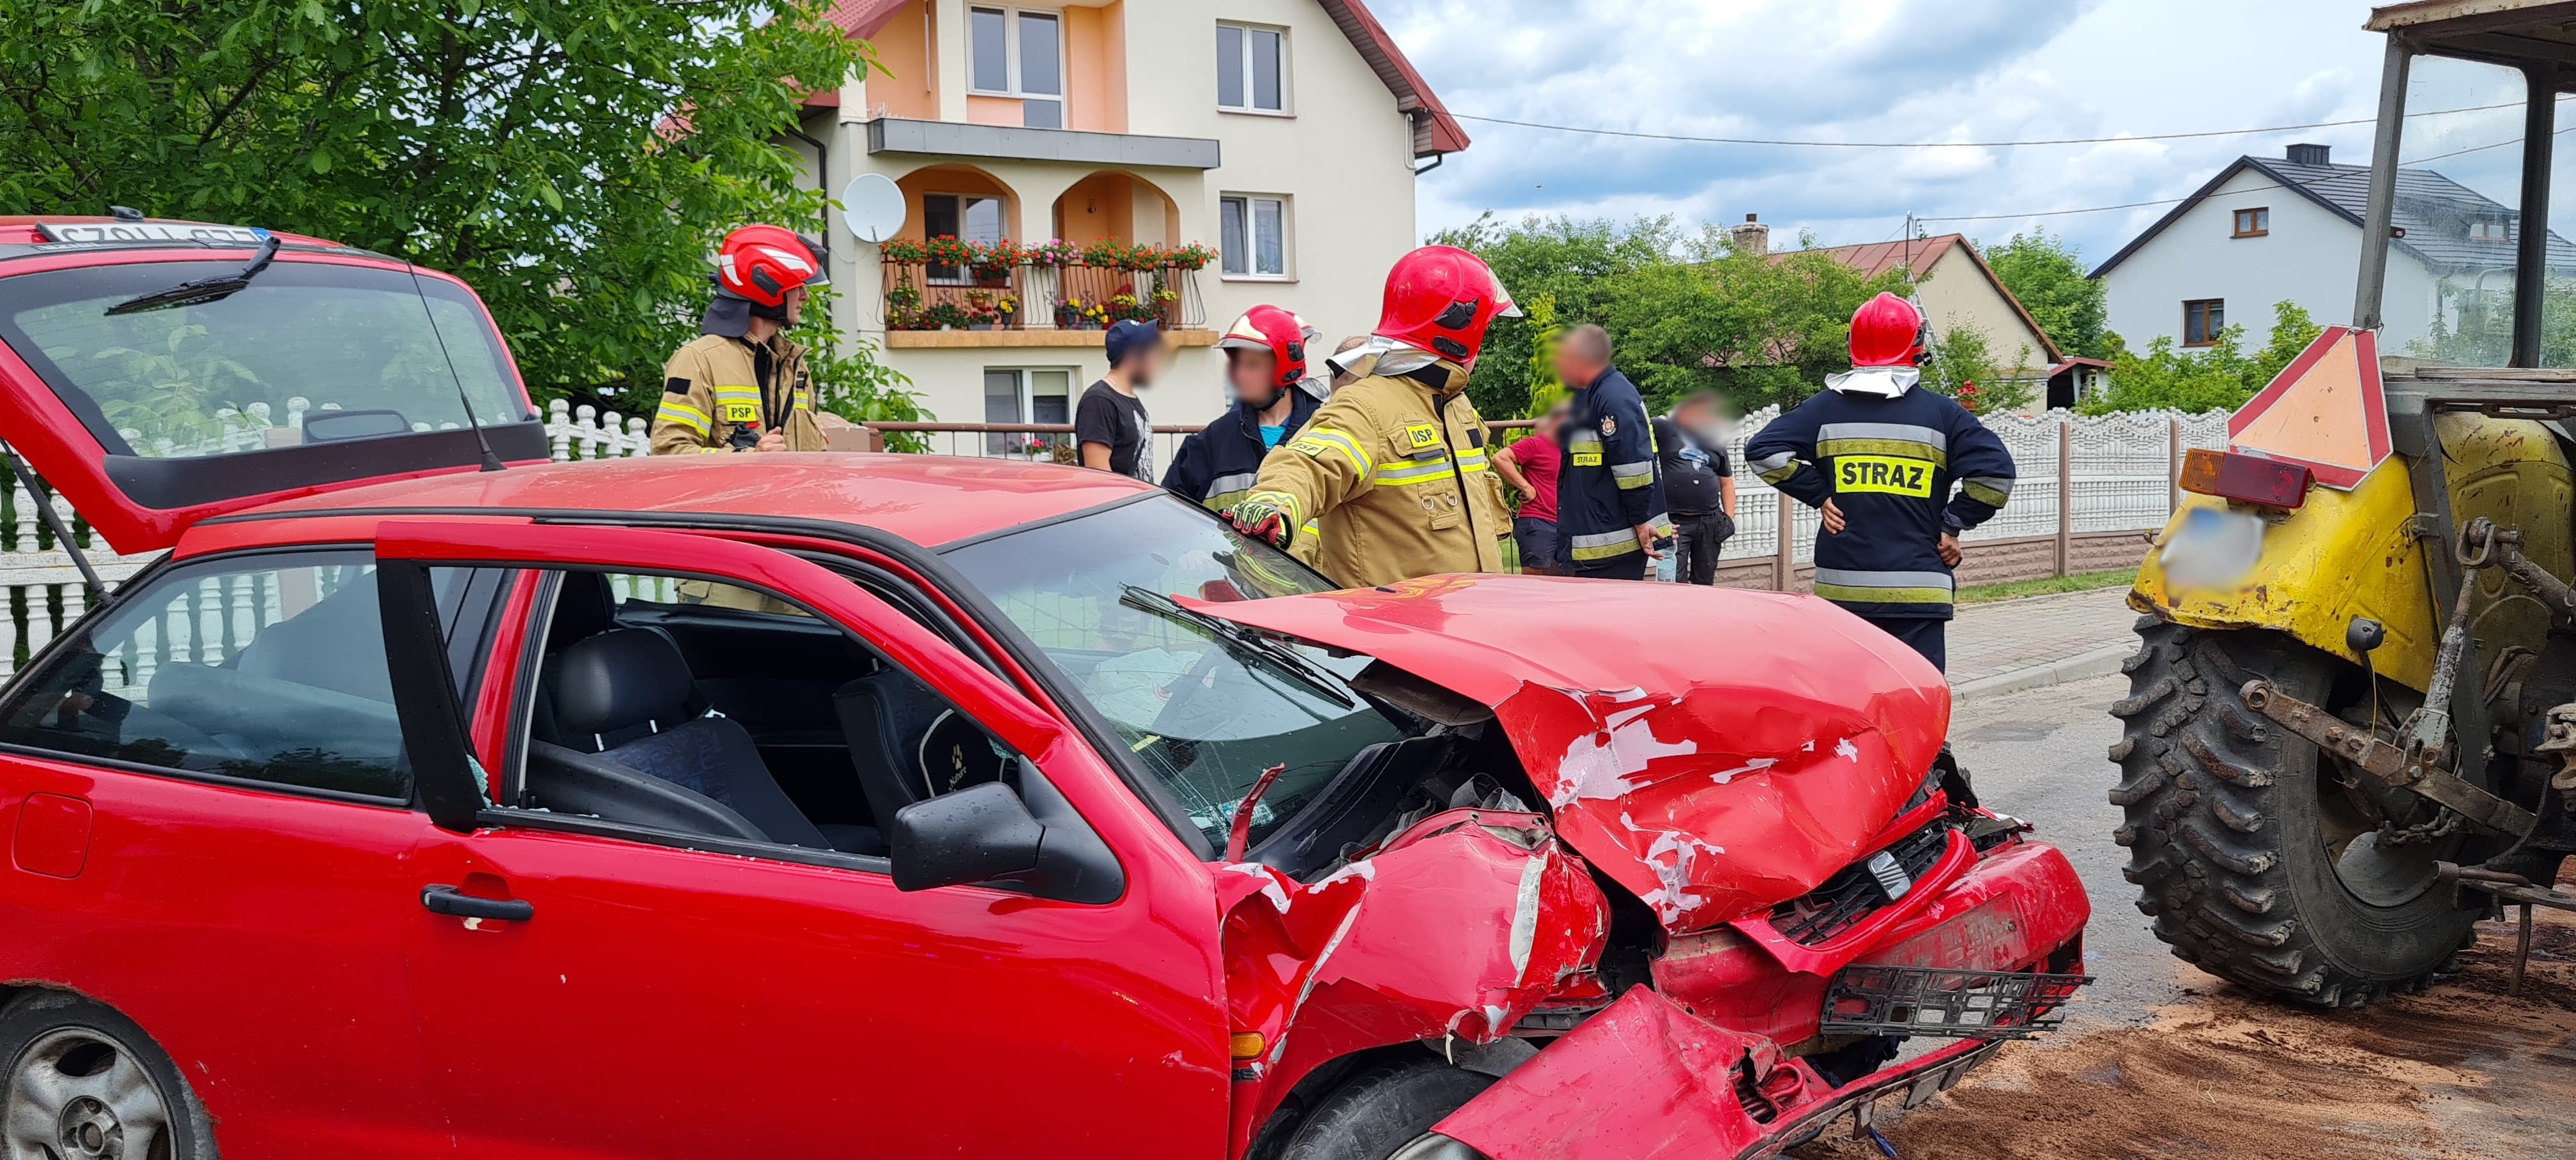 Zderzenie BMW z seatem, jedna osoba poszkodowana. W akcji ratunkowej śmigłowiec LPR (zdjęcia)